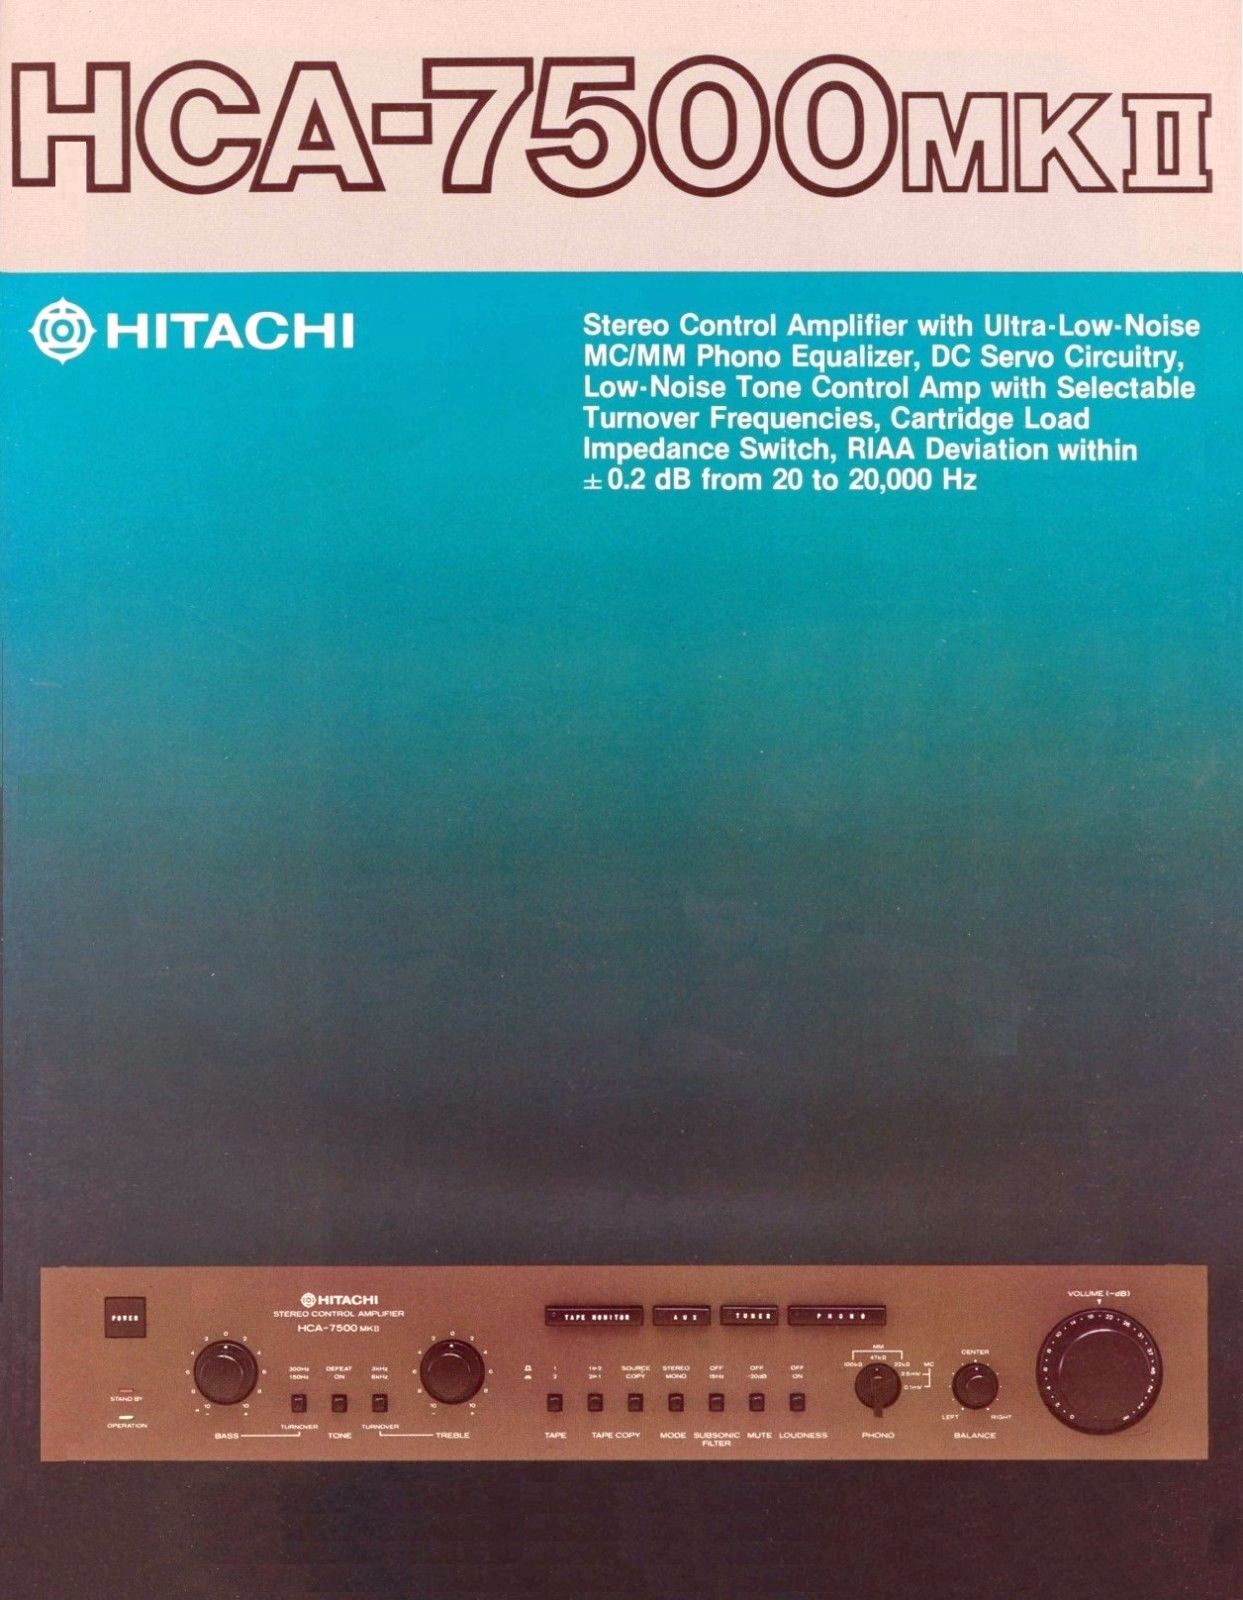 Hitachi HCA-7500 MK II-Prospekt-1.jpg